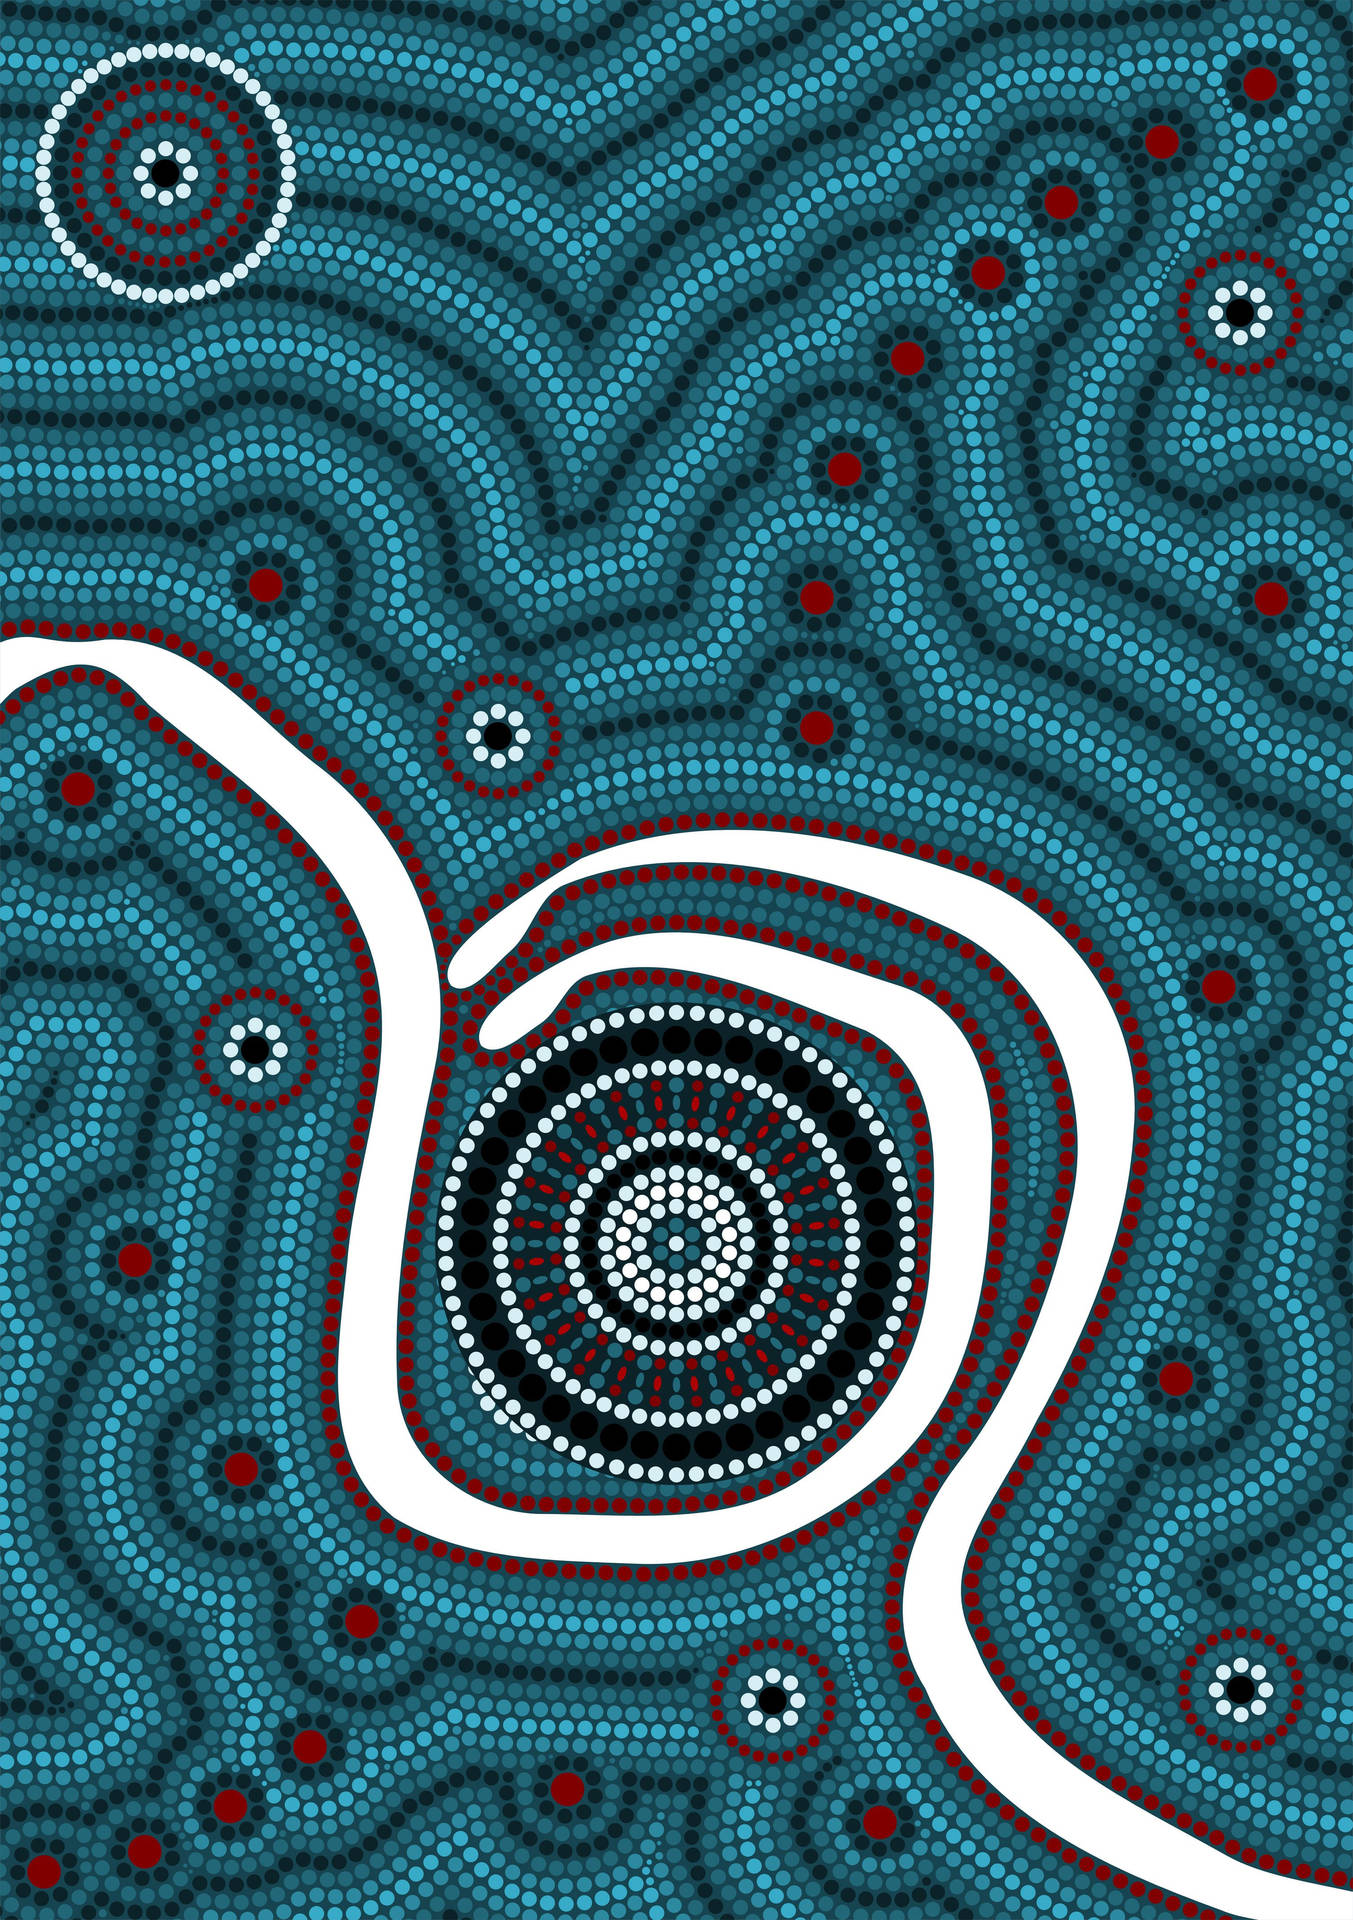 Indigenous Blue Eye Art Wallpaper